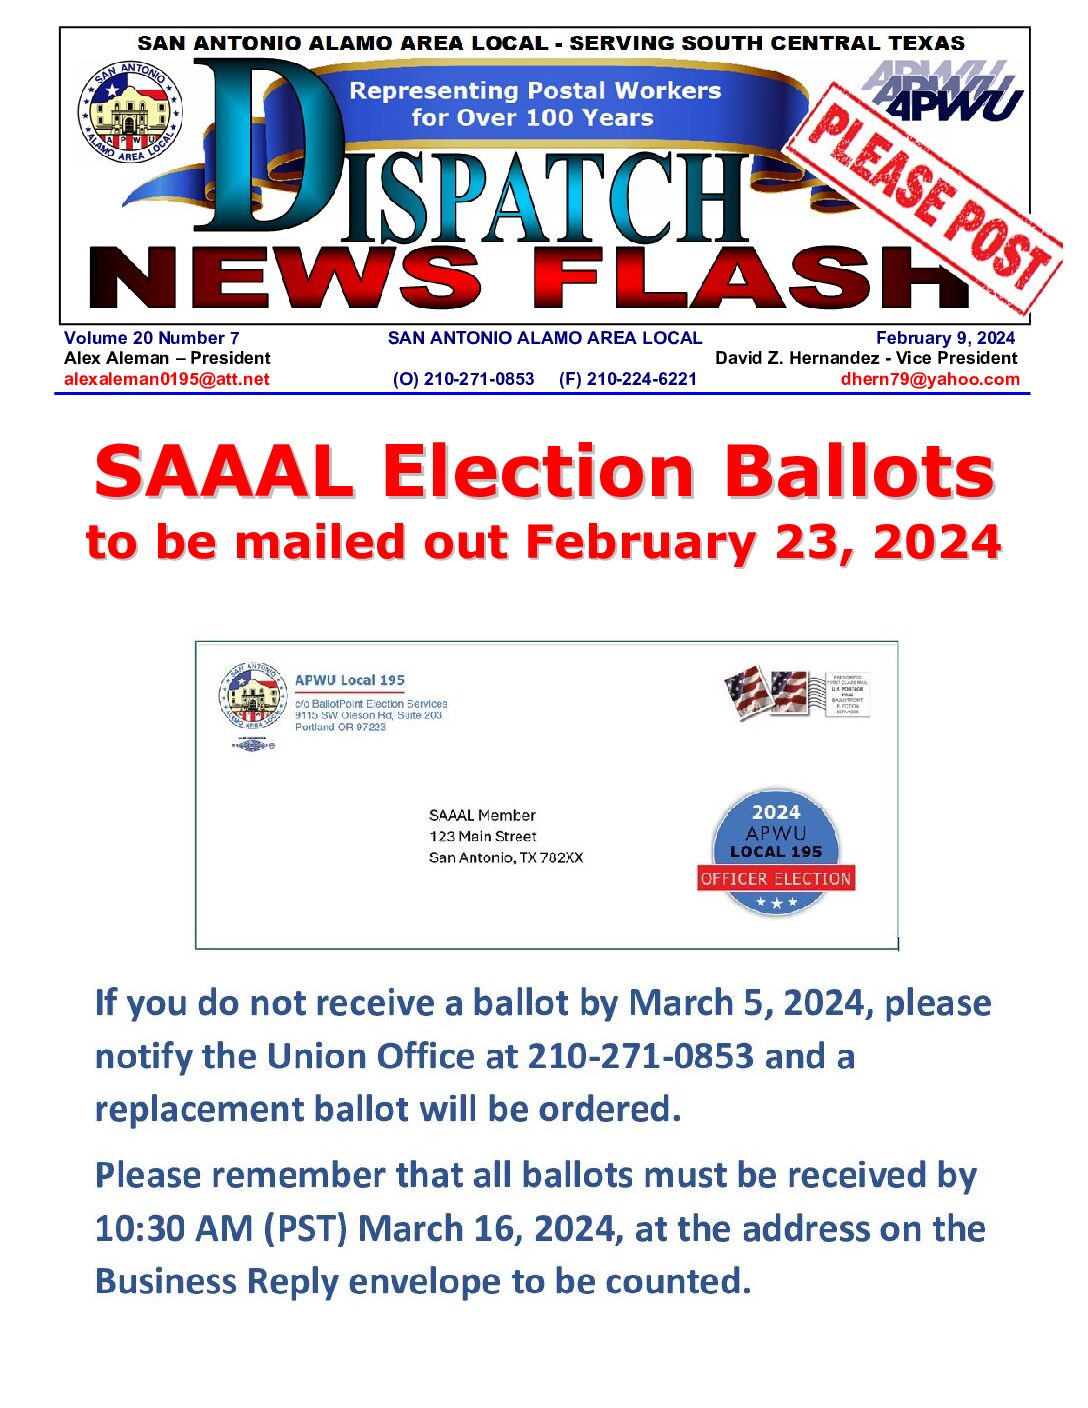 NewsFlash 20-7  SAAAL Election Ballots Mailed Soon - 